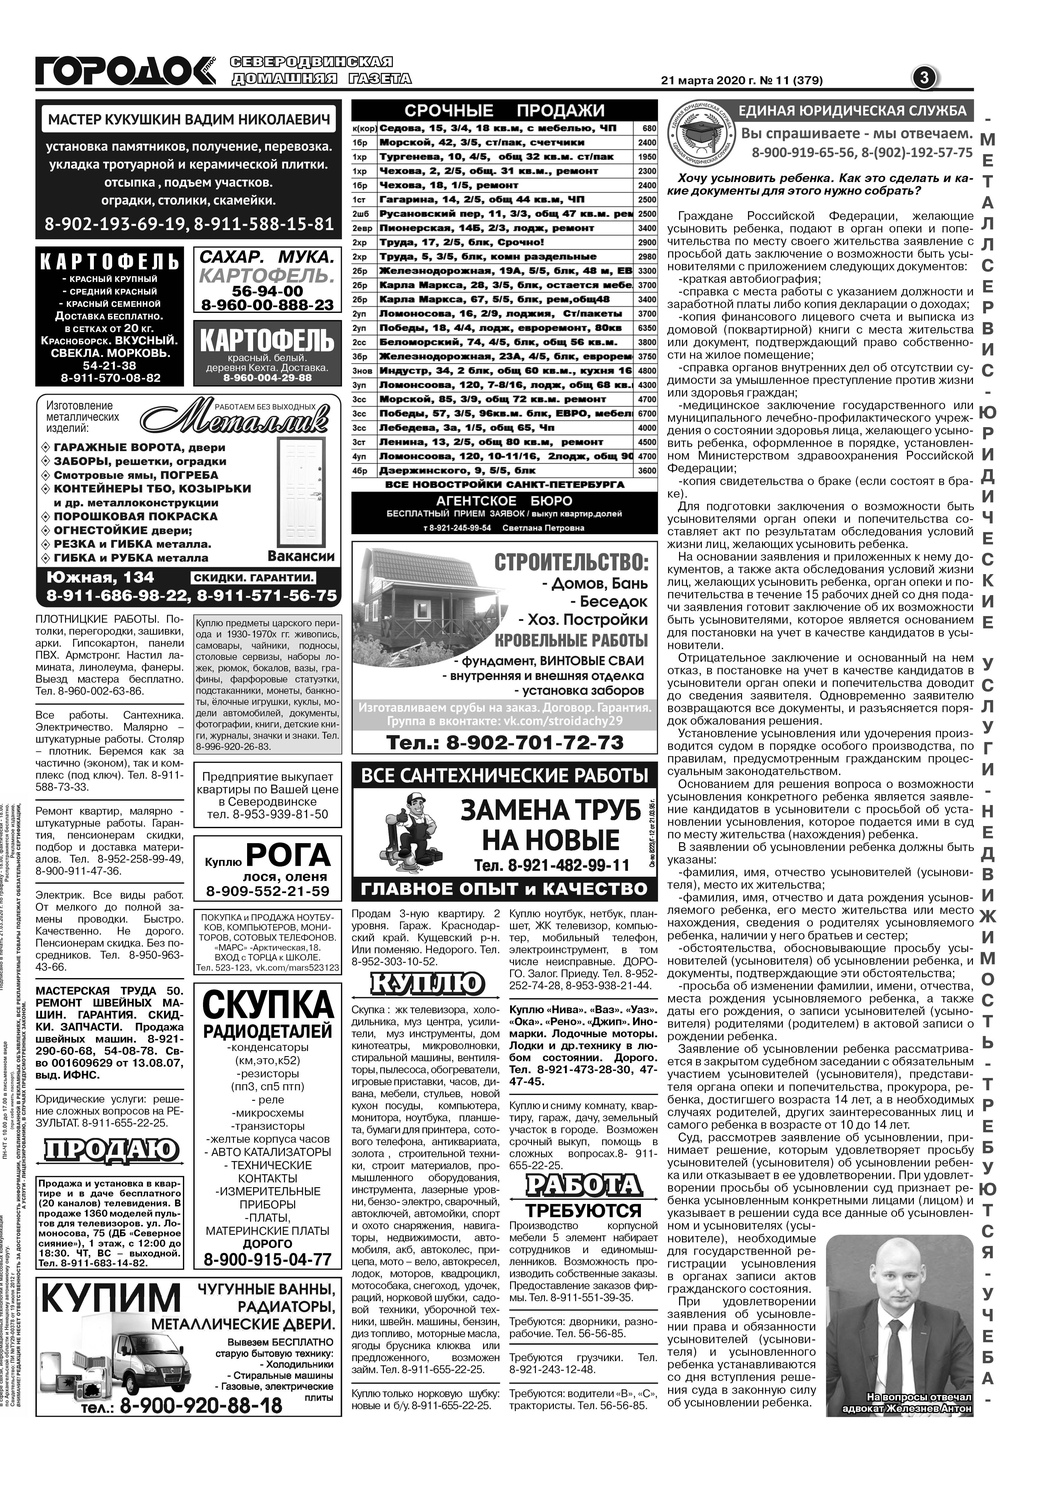 Городок плюс, выпуск номер 11 от 22 марта 2020 года, страница 3.